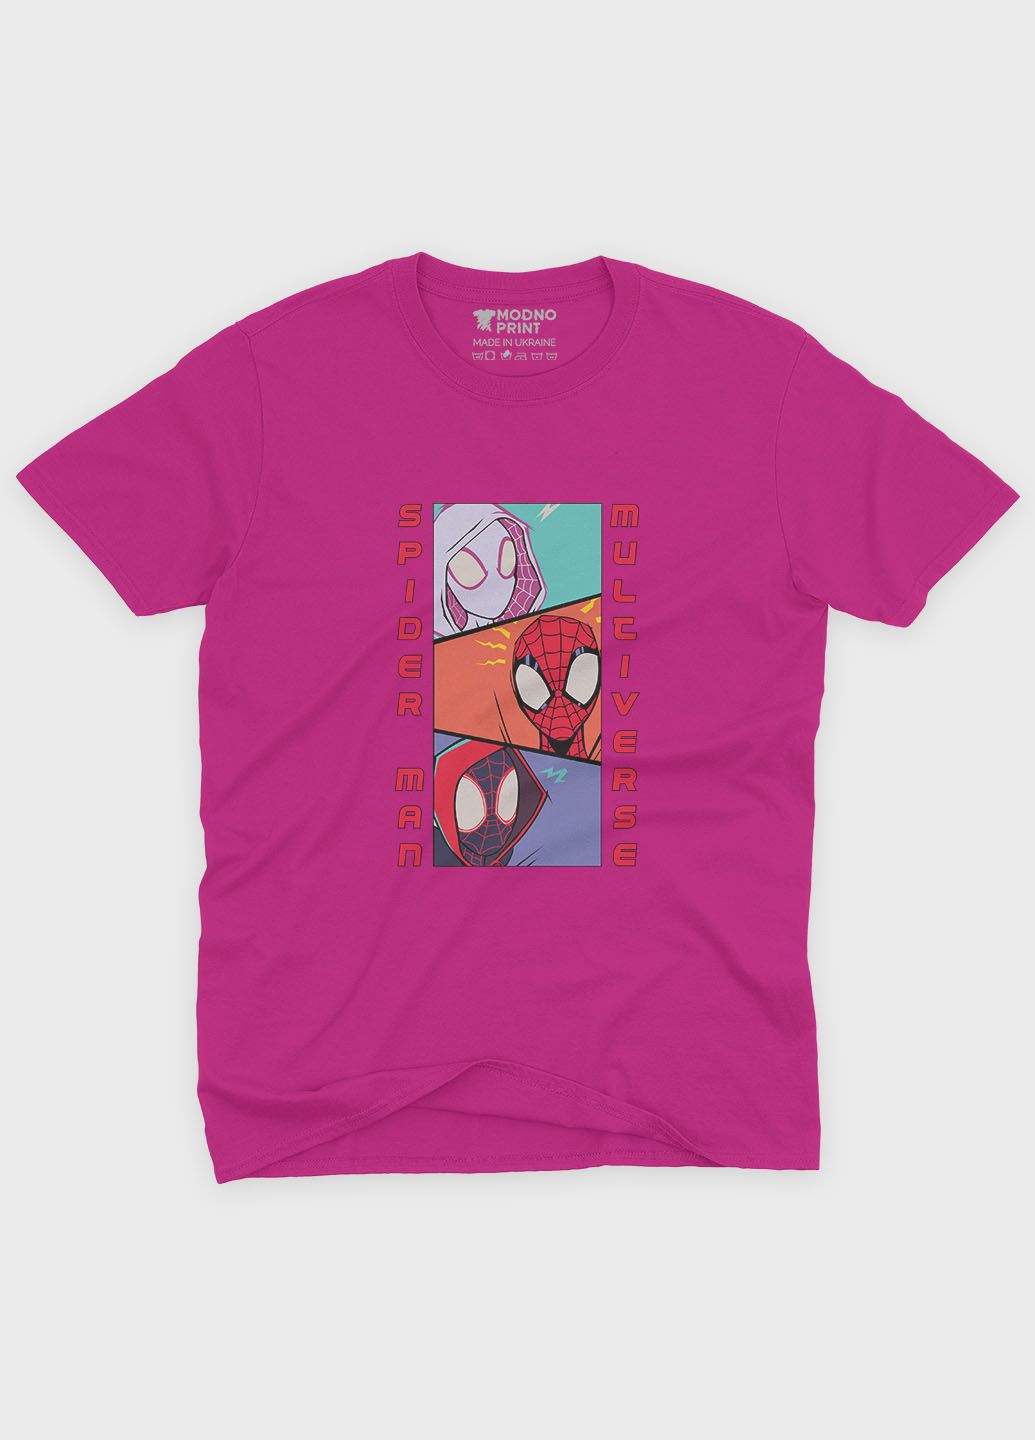 Розовая демисезонная футболка для мальчика с принтом супергероя - человек-паук (ts001-1-fuxj-006-014-047-b) Modno